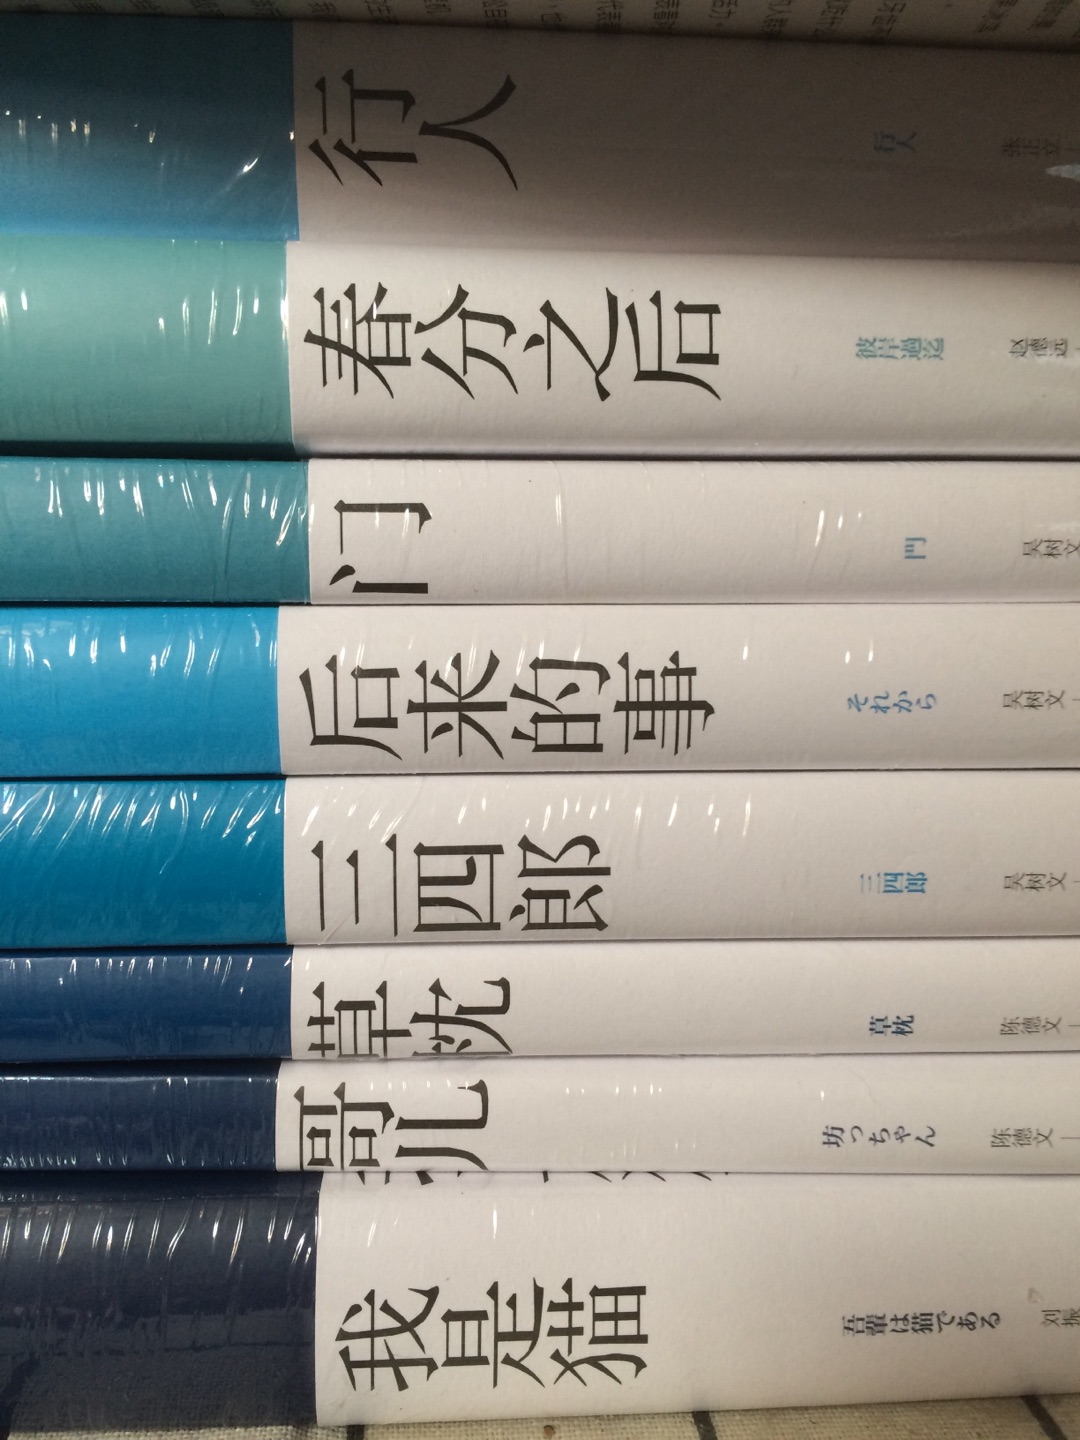 趁着618大促买了一波夏目漱石，书脊的颜色深浅是按照作品的时间先后顺序来拍的，很好玩儿呐。喜欢h